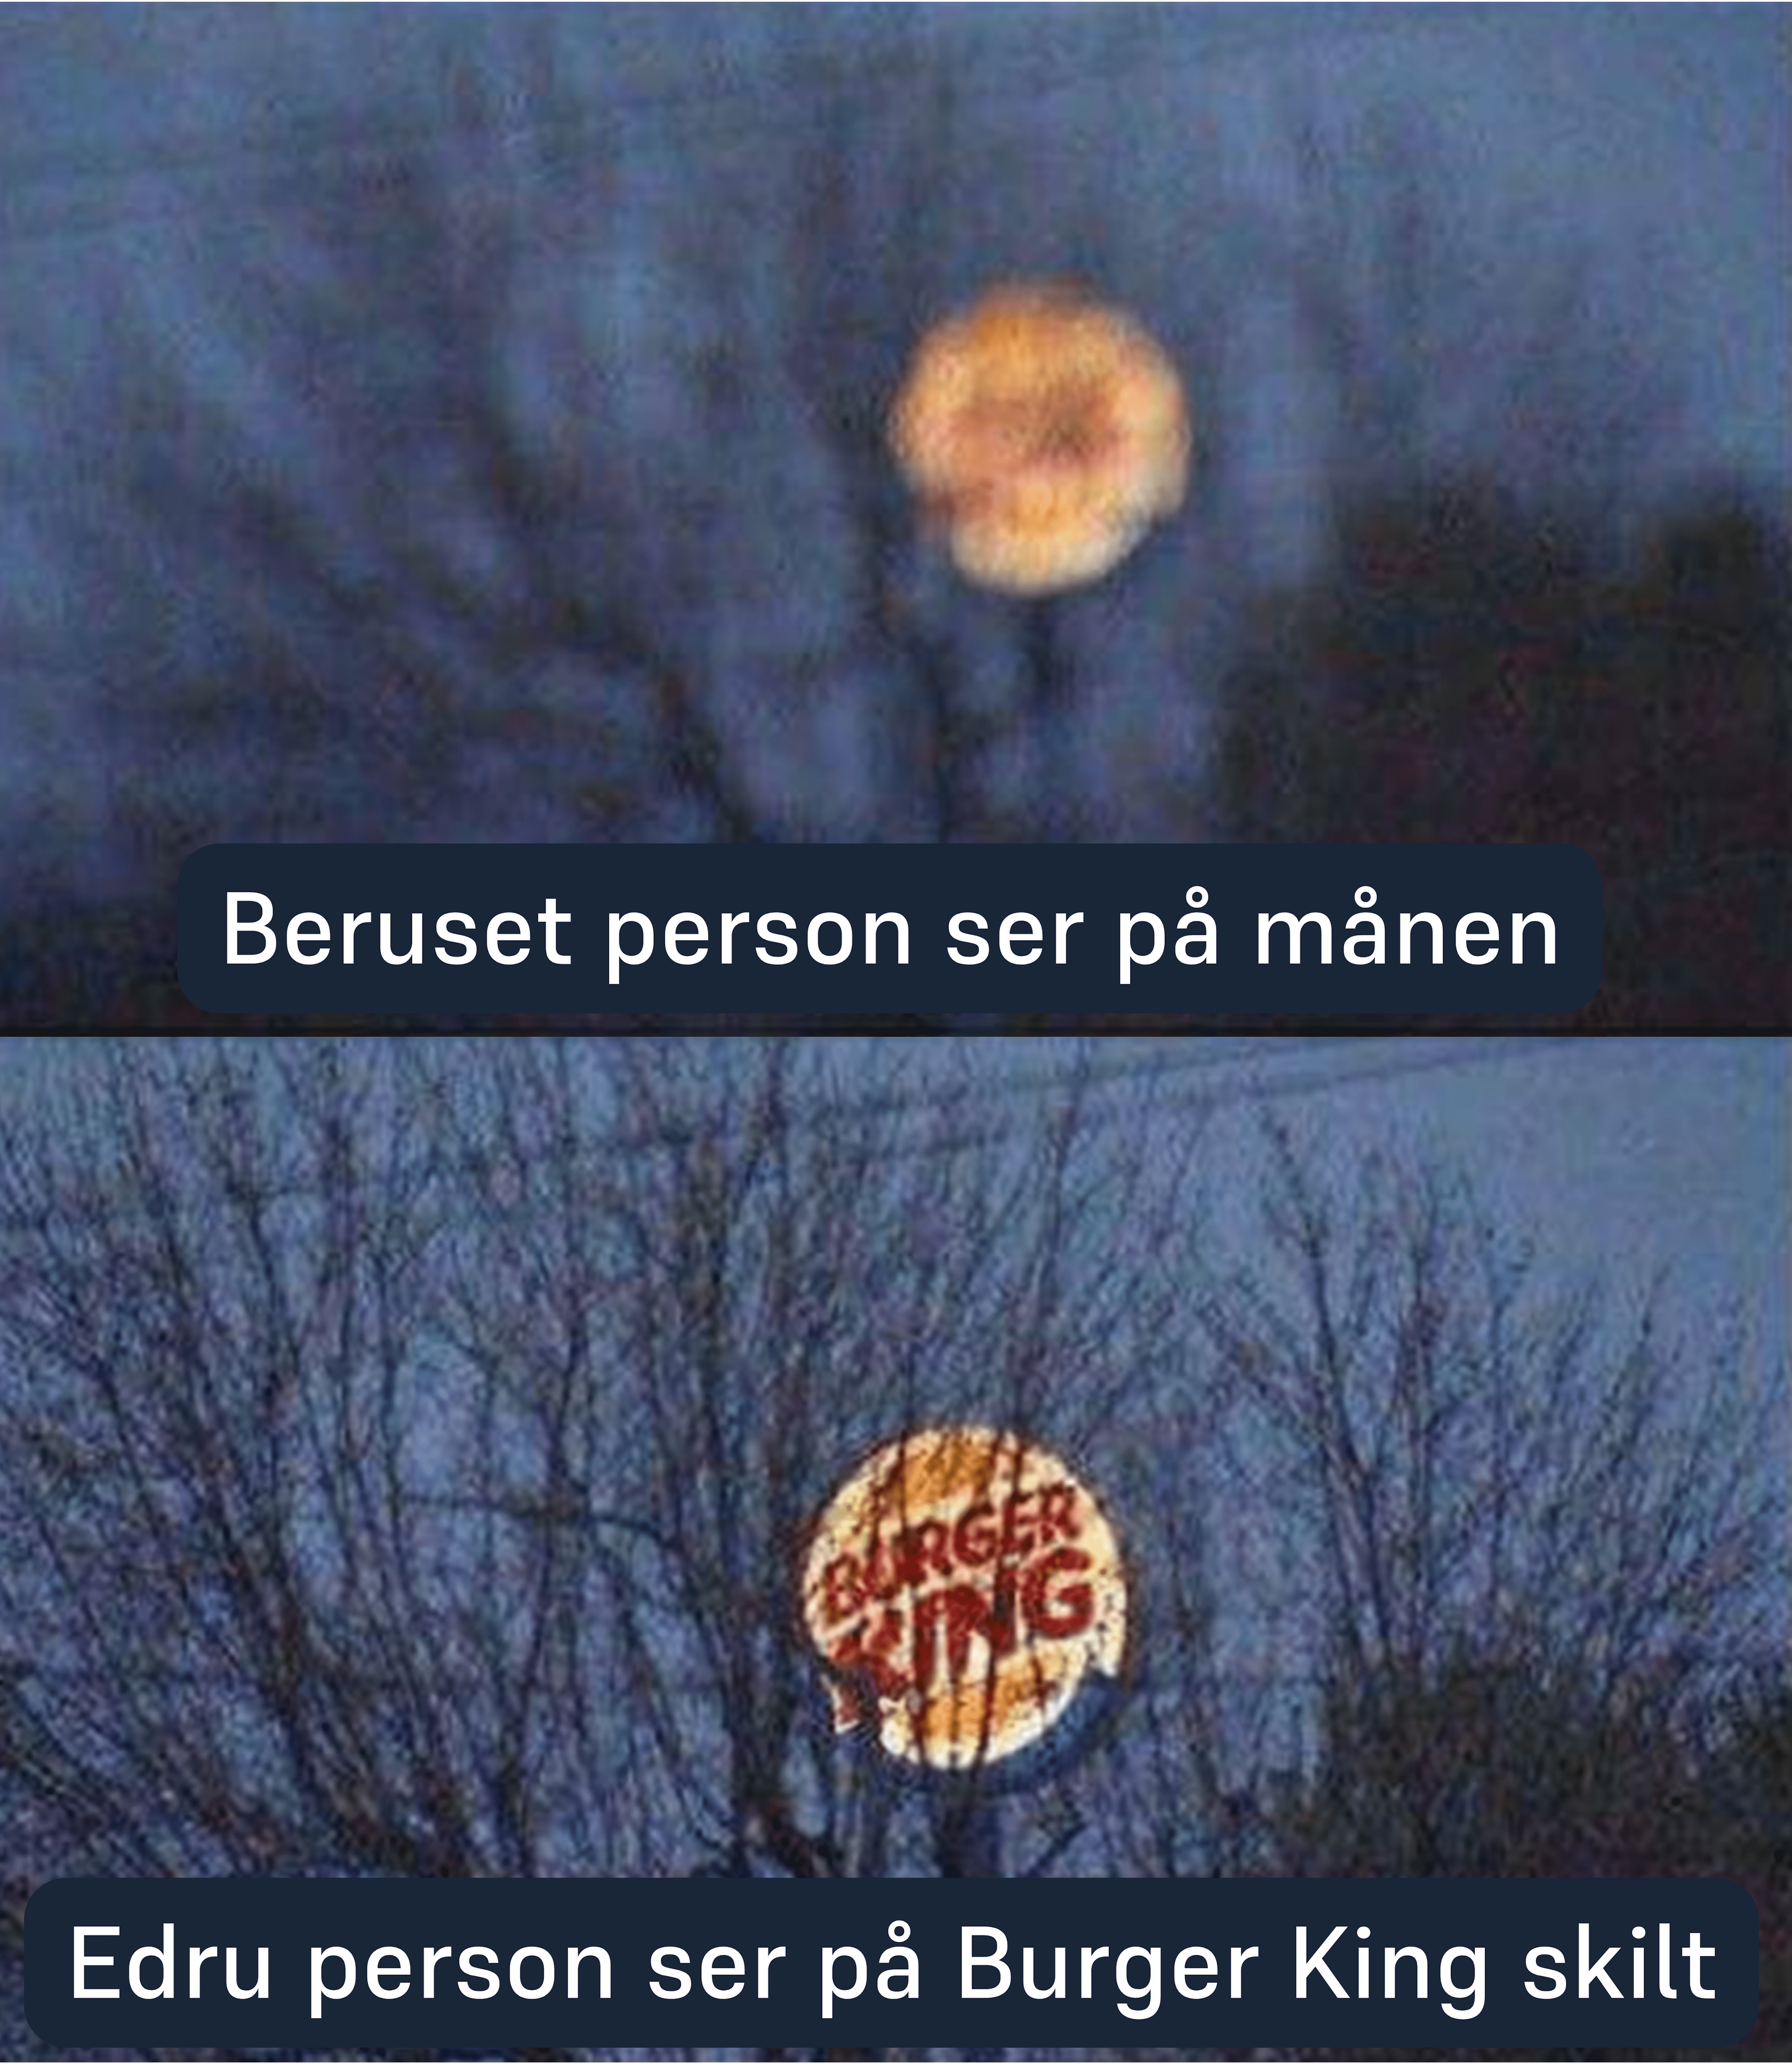 Beruset person ser på månen, mens edru person ser på Burger King skilt.